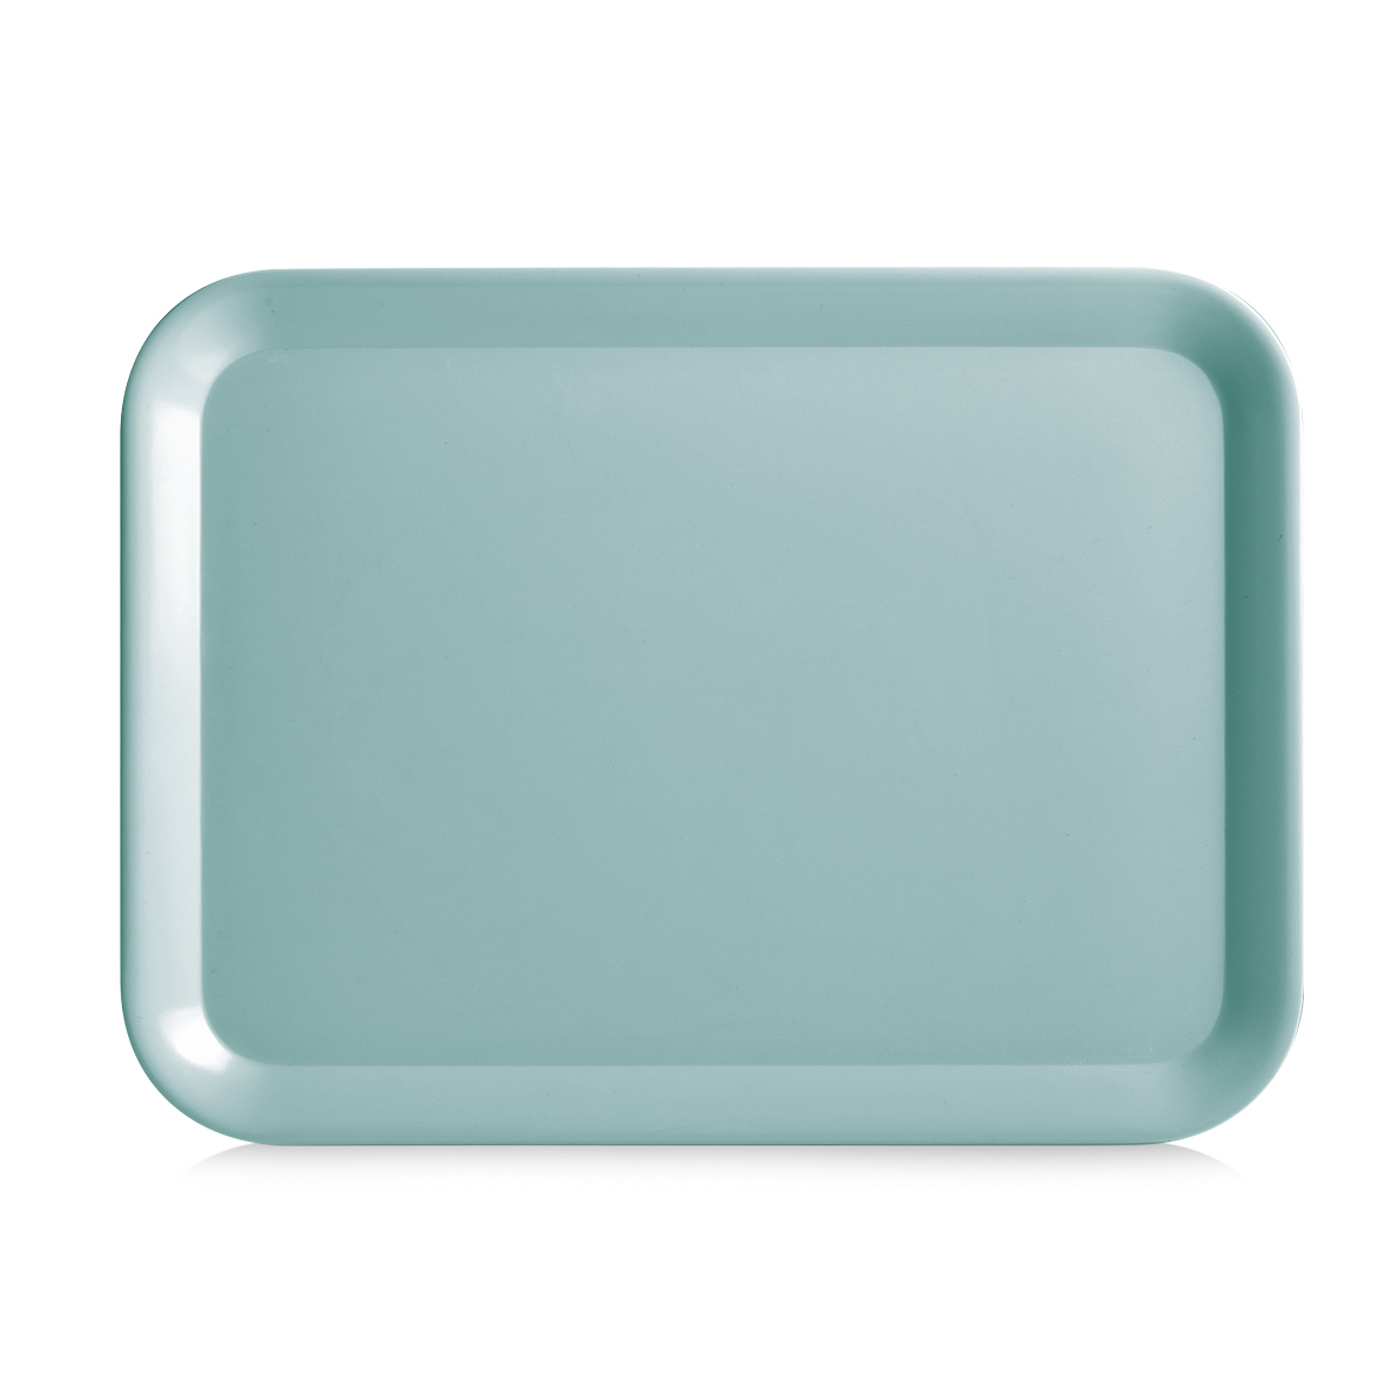 Tablett MISTRAL, Farbe: aqua, Grösse: 43,5 x 32,5 cm,